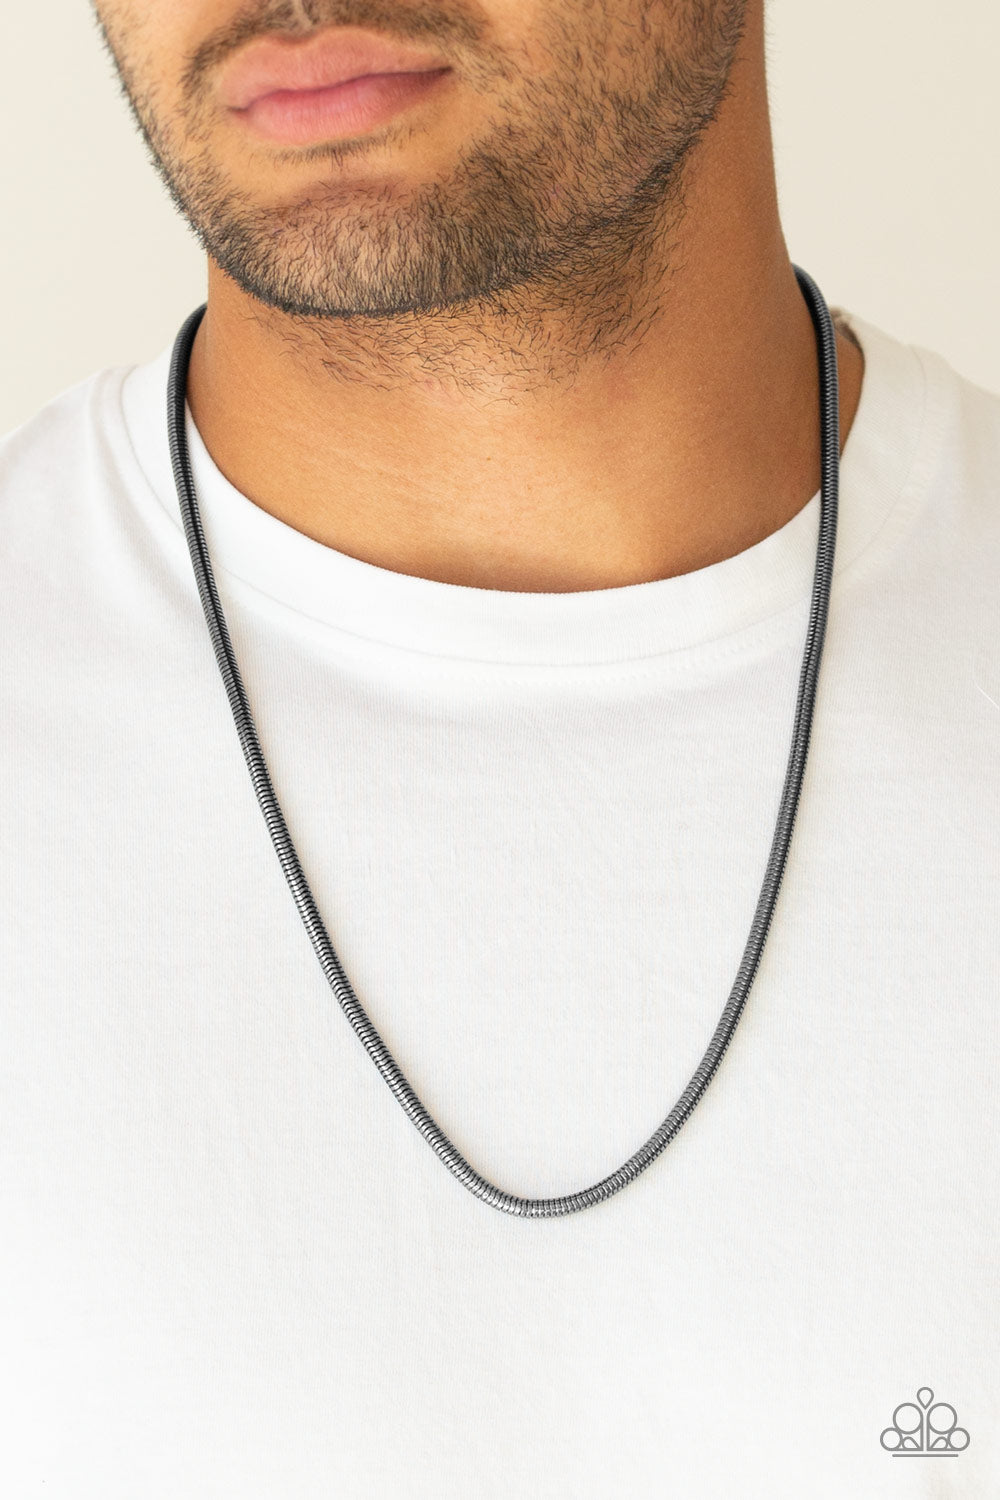 Paparazzi Victory Lap - Black Men's Necklace